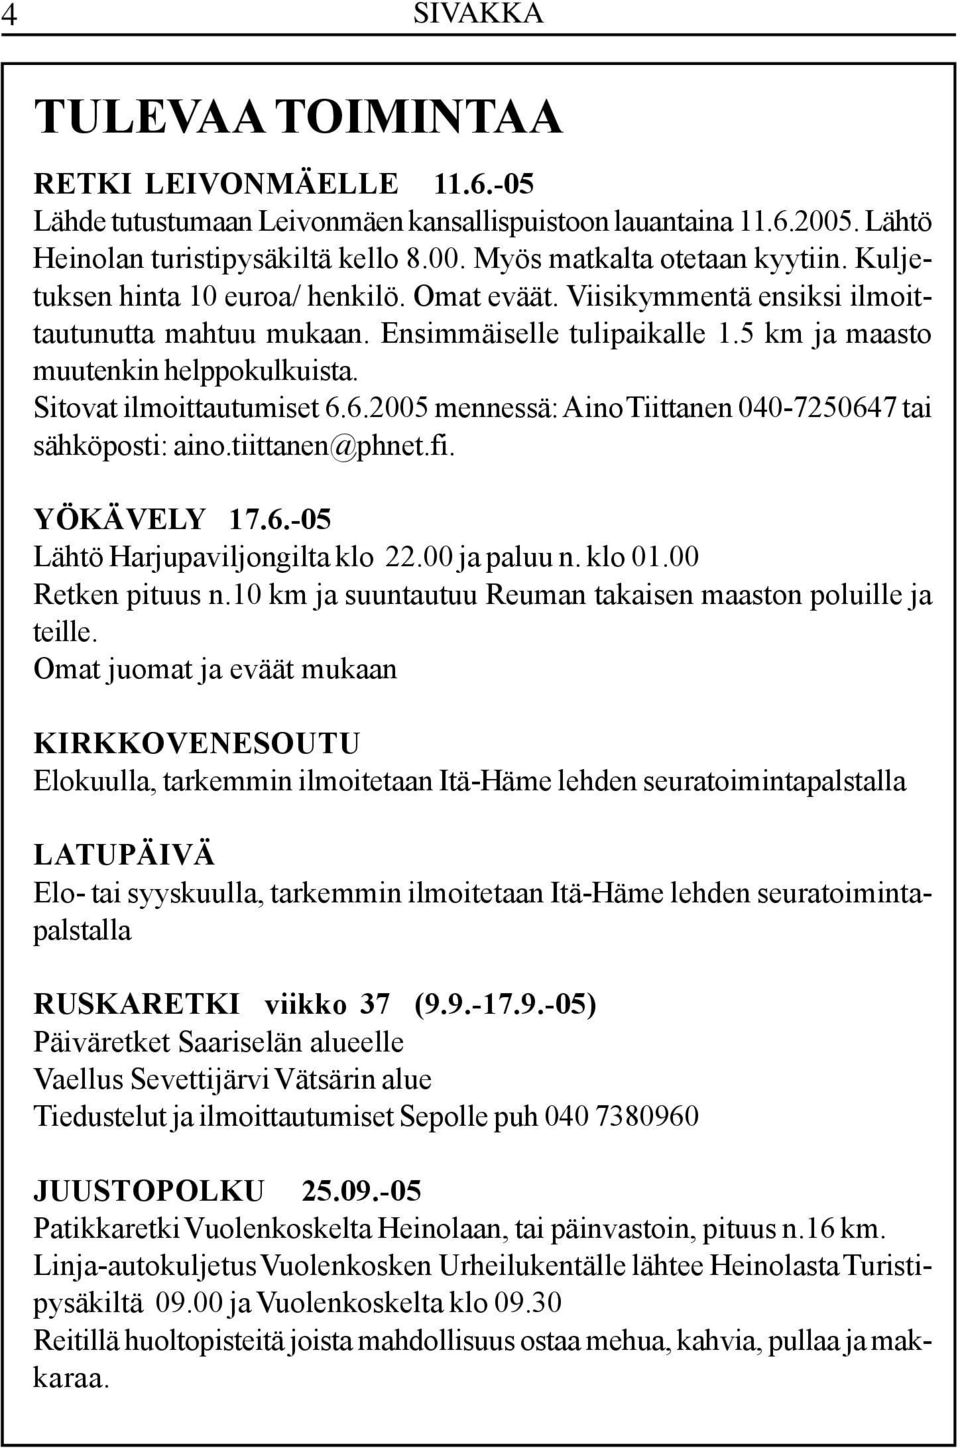 Sitovat ilmoittautumiset 6.6.2005 mennessä: Aino Tiittanen 040-7250647 tai sähköposti: aino.tiittanen@phnet.fi. YÖKÄVELY 17.6.-05 Lähtö Harjupaviljongilta klo 22.00 ja paluu n. klo 01.